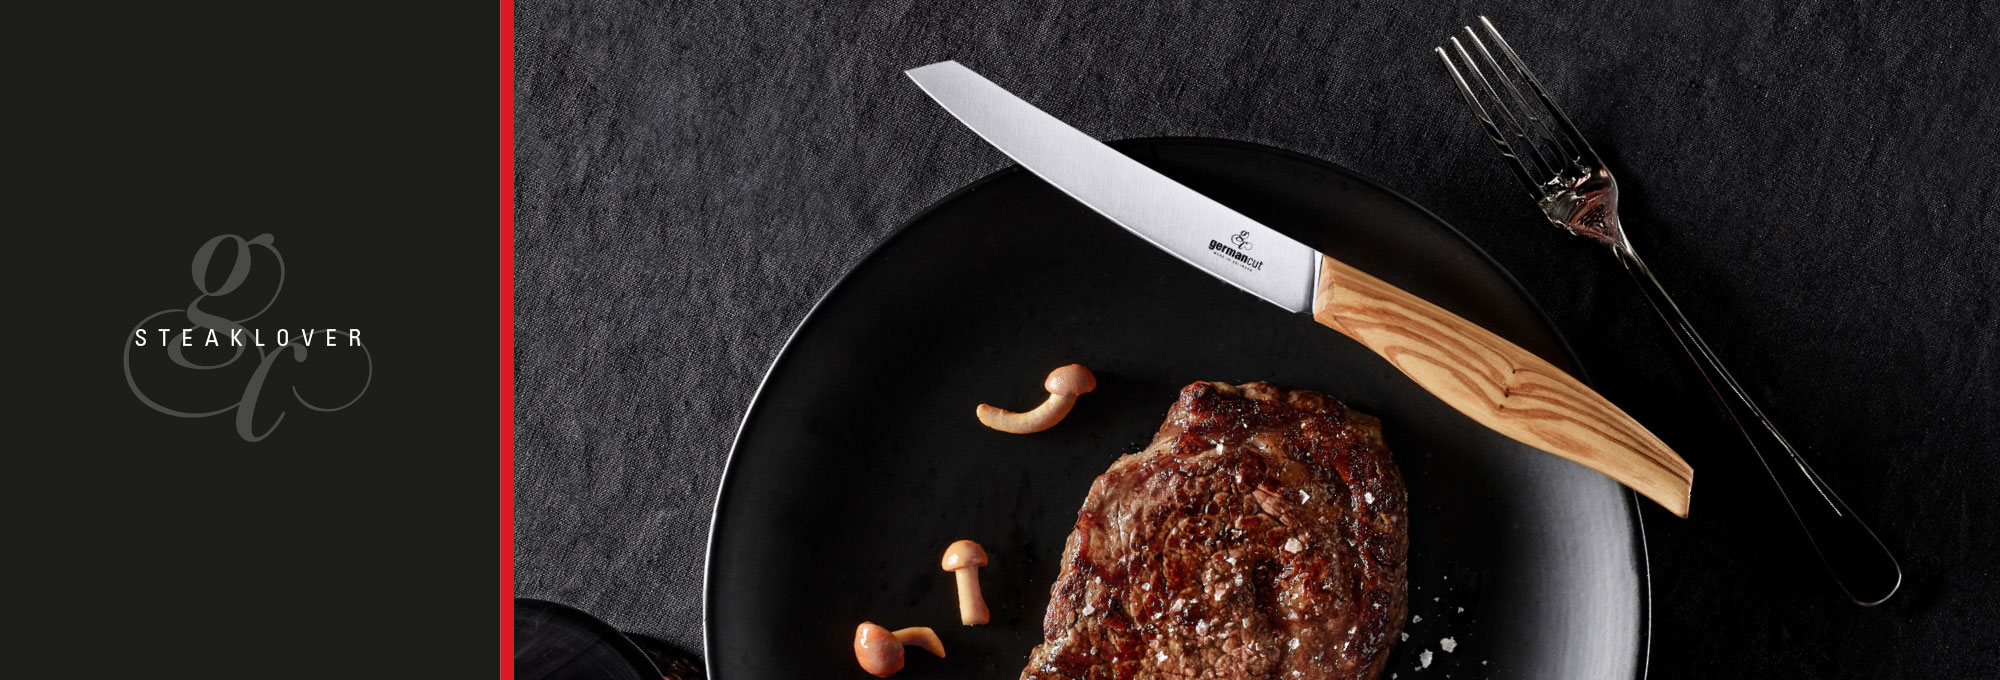 Startseite Steaklover Steakmesser Header